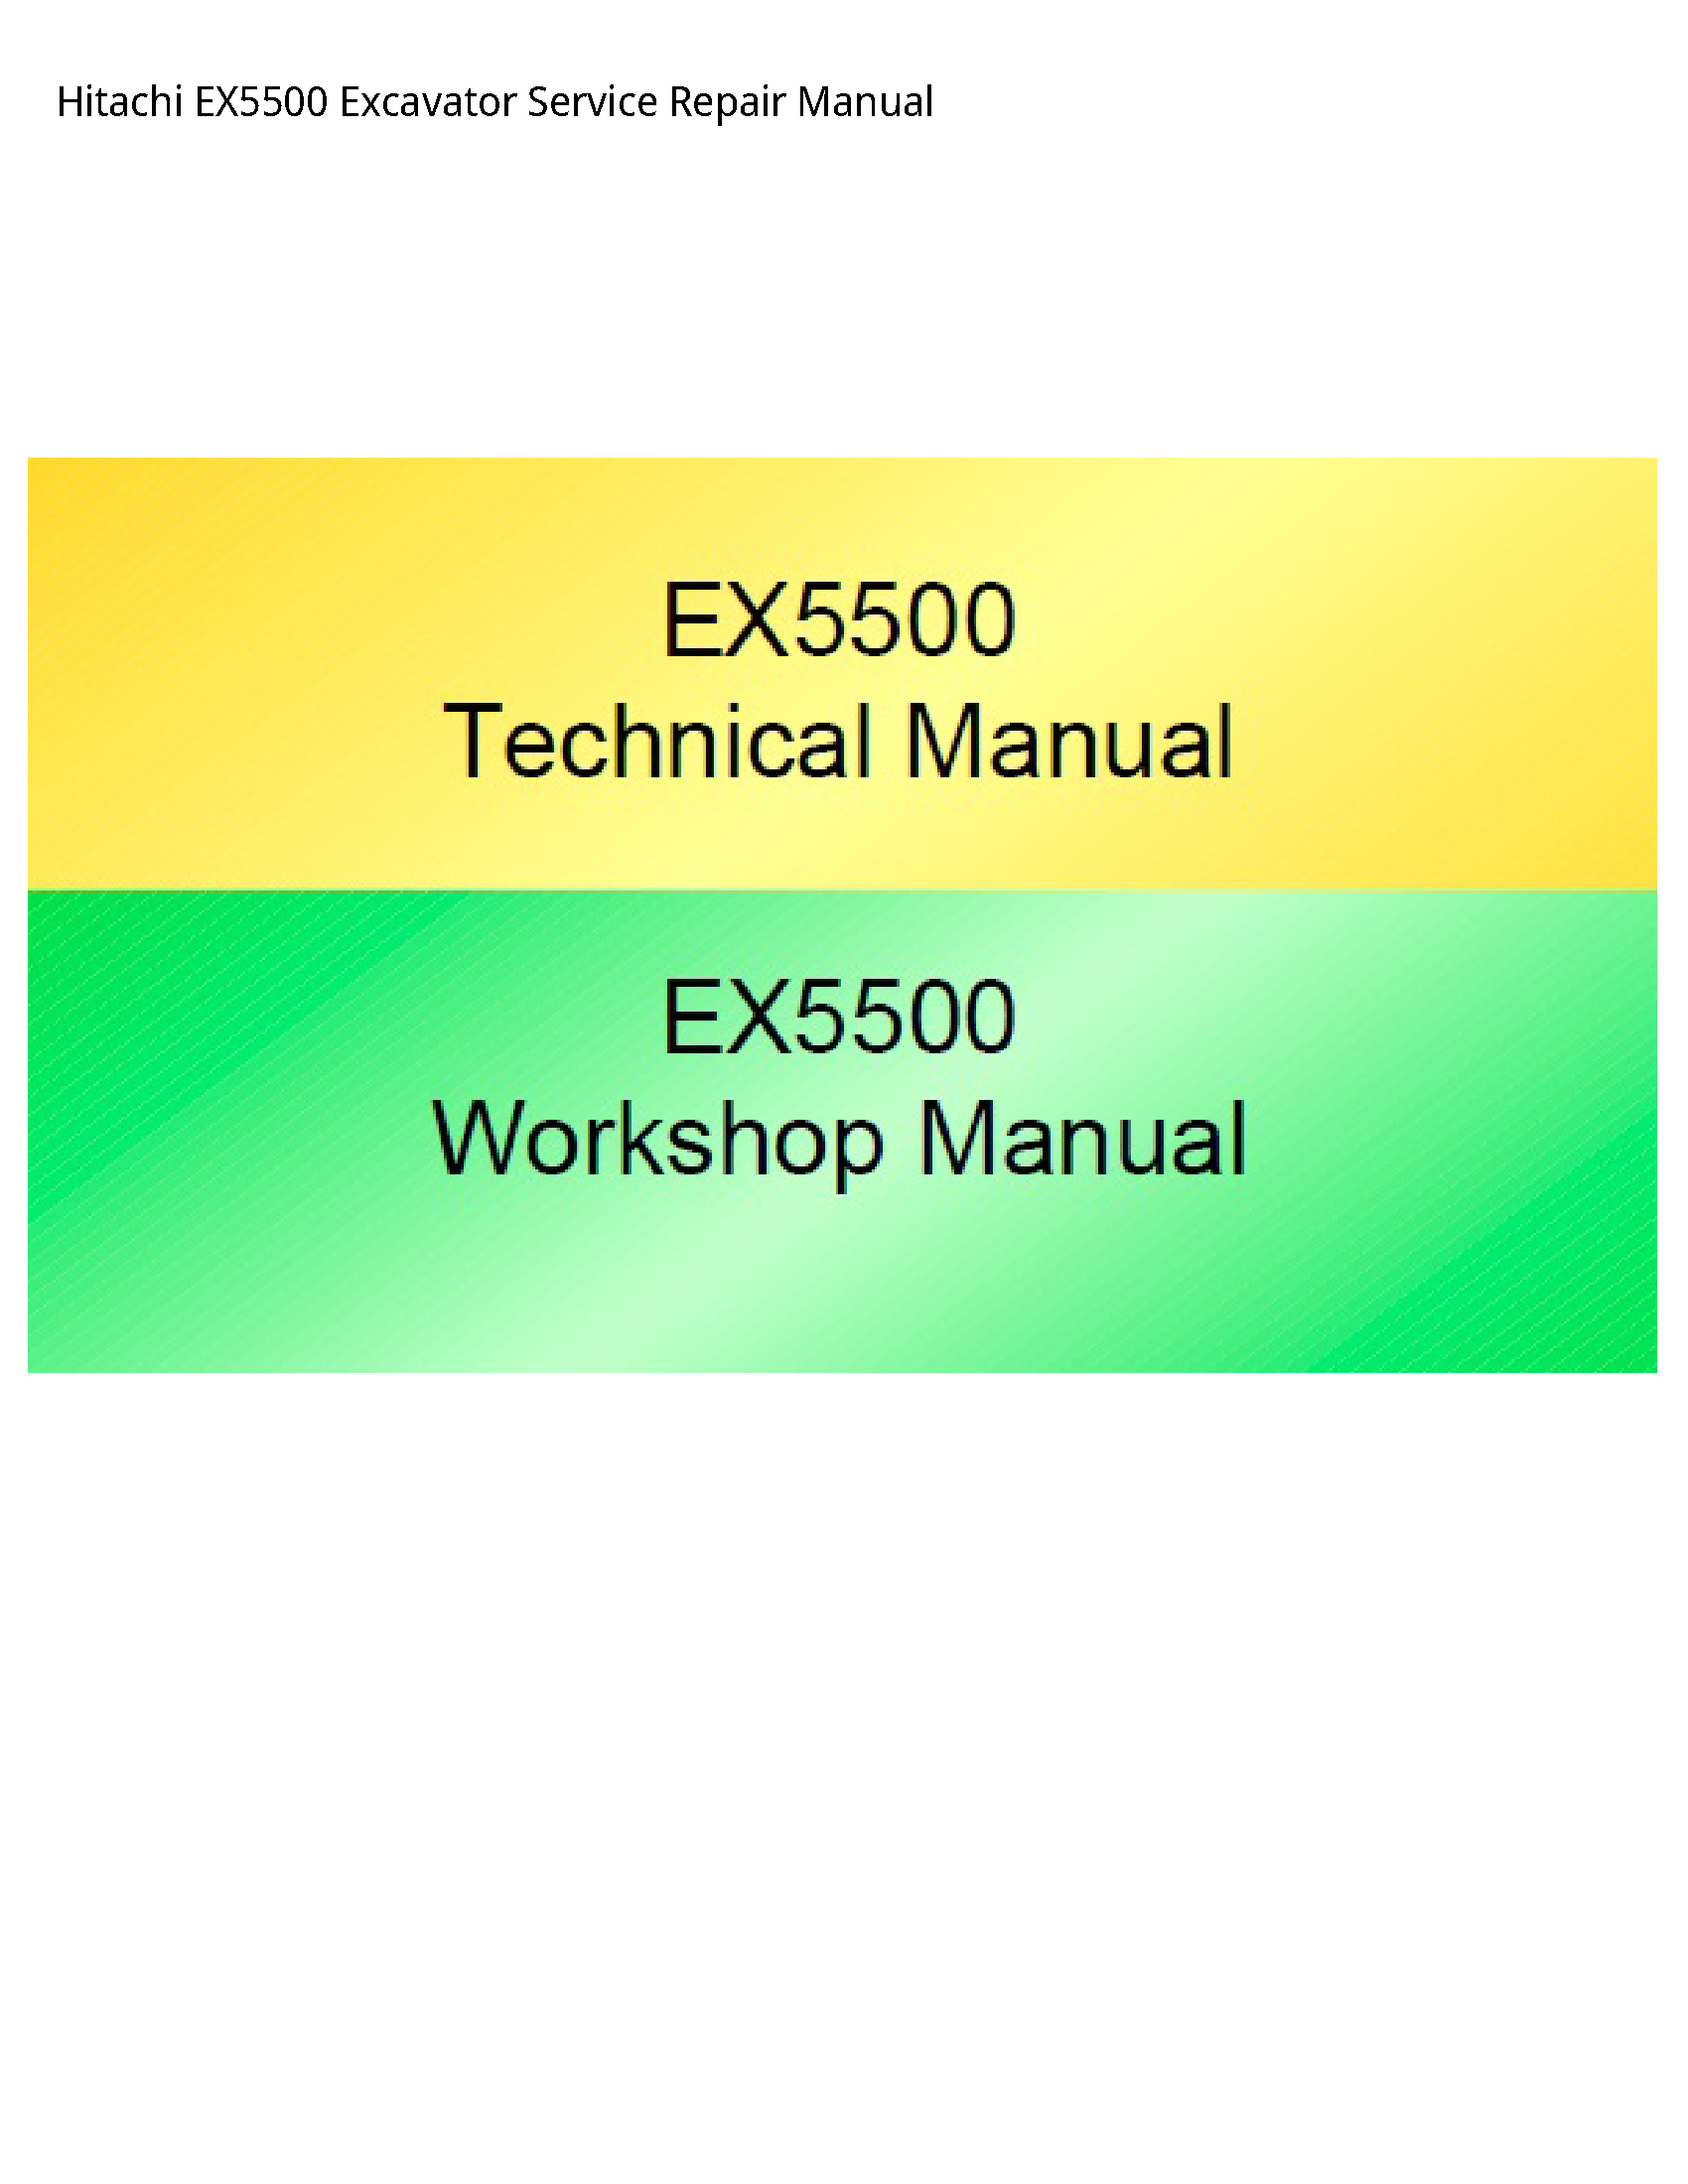 Hitachi EX5500 Excavator manual